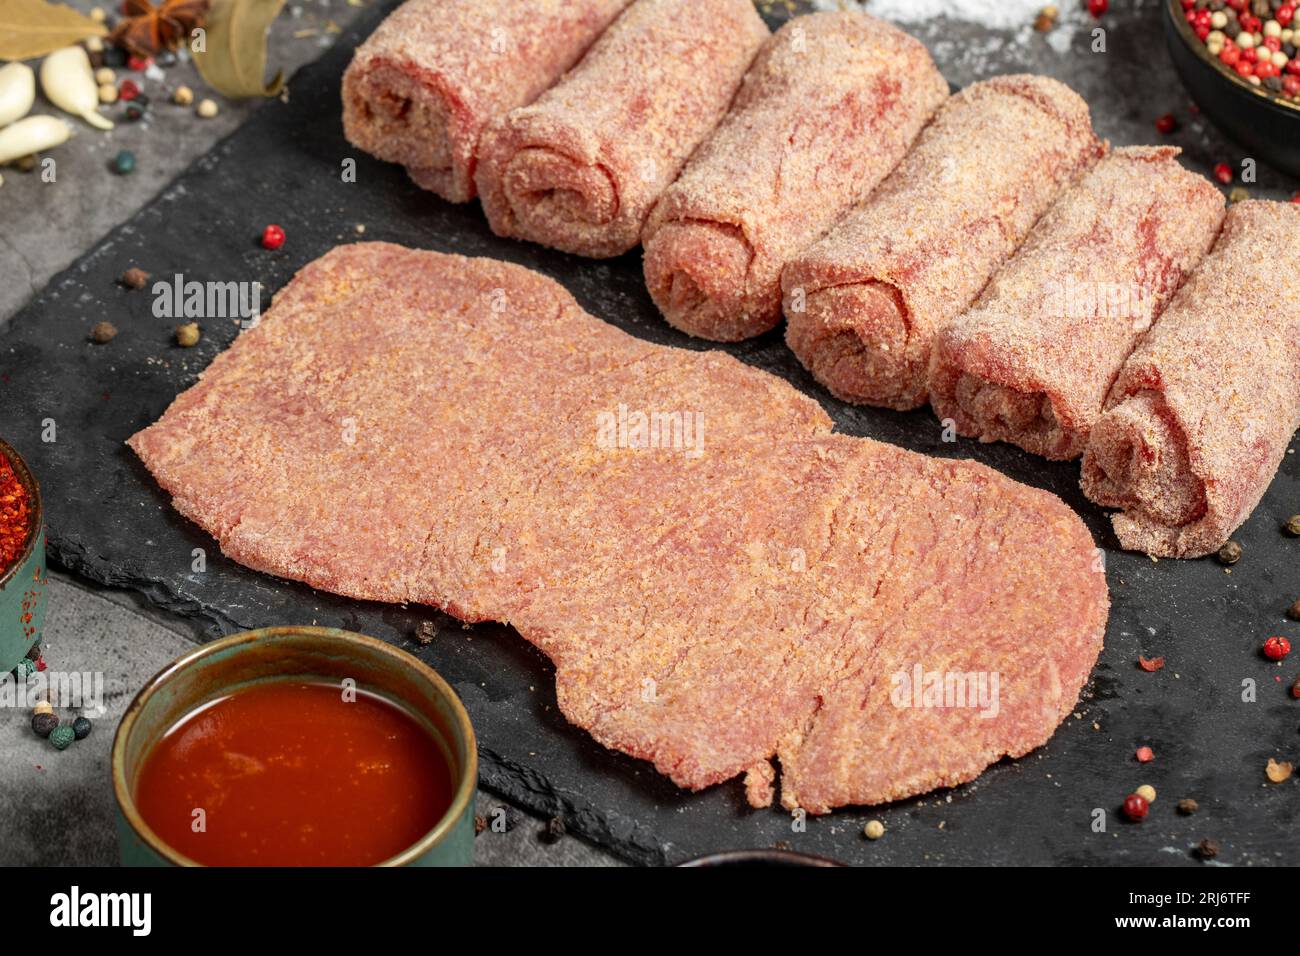 Schnitzel de carne. Schnitzel de carne cruda sobre fondo oscuro. Productos de carnicería. Primer plano Foto de stock